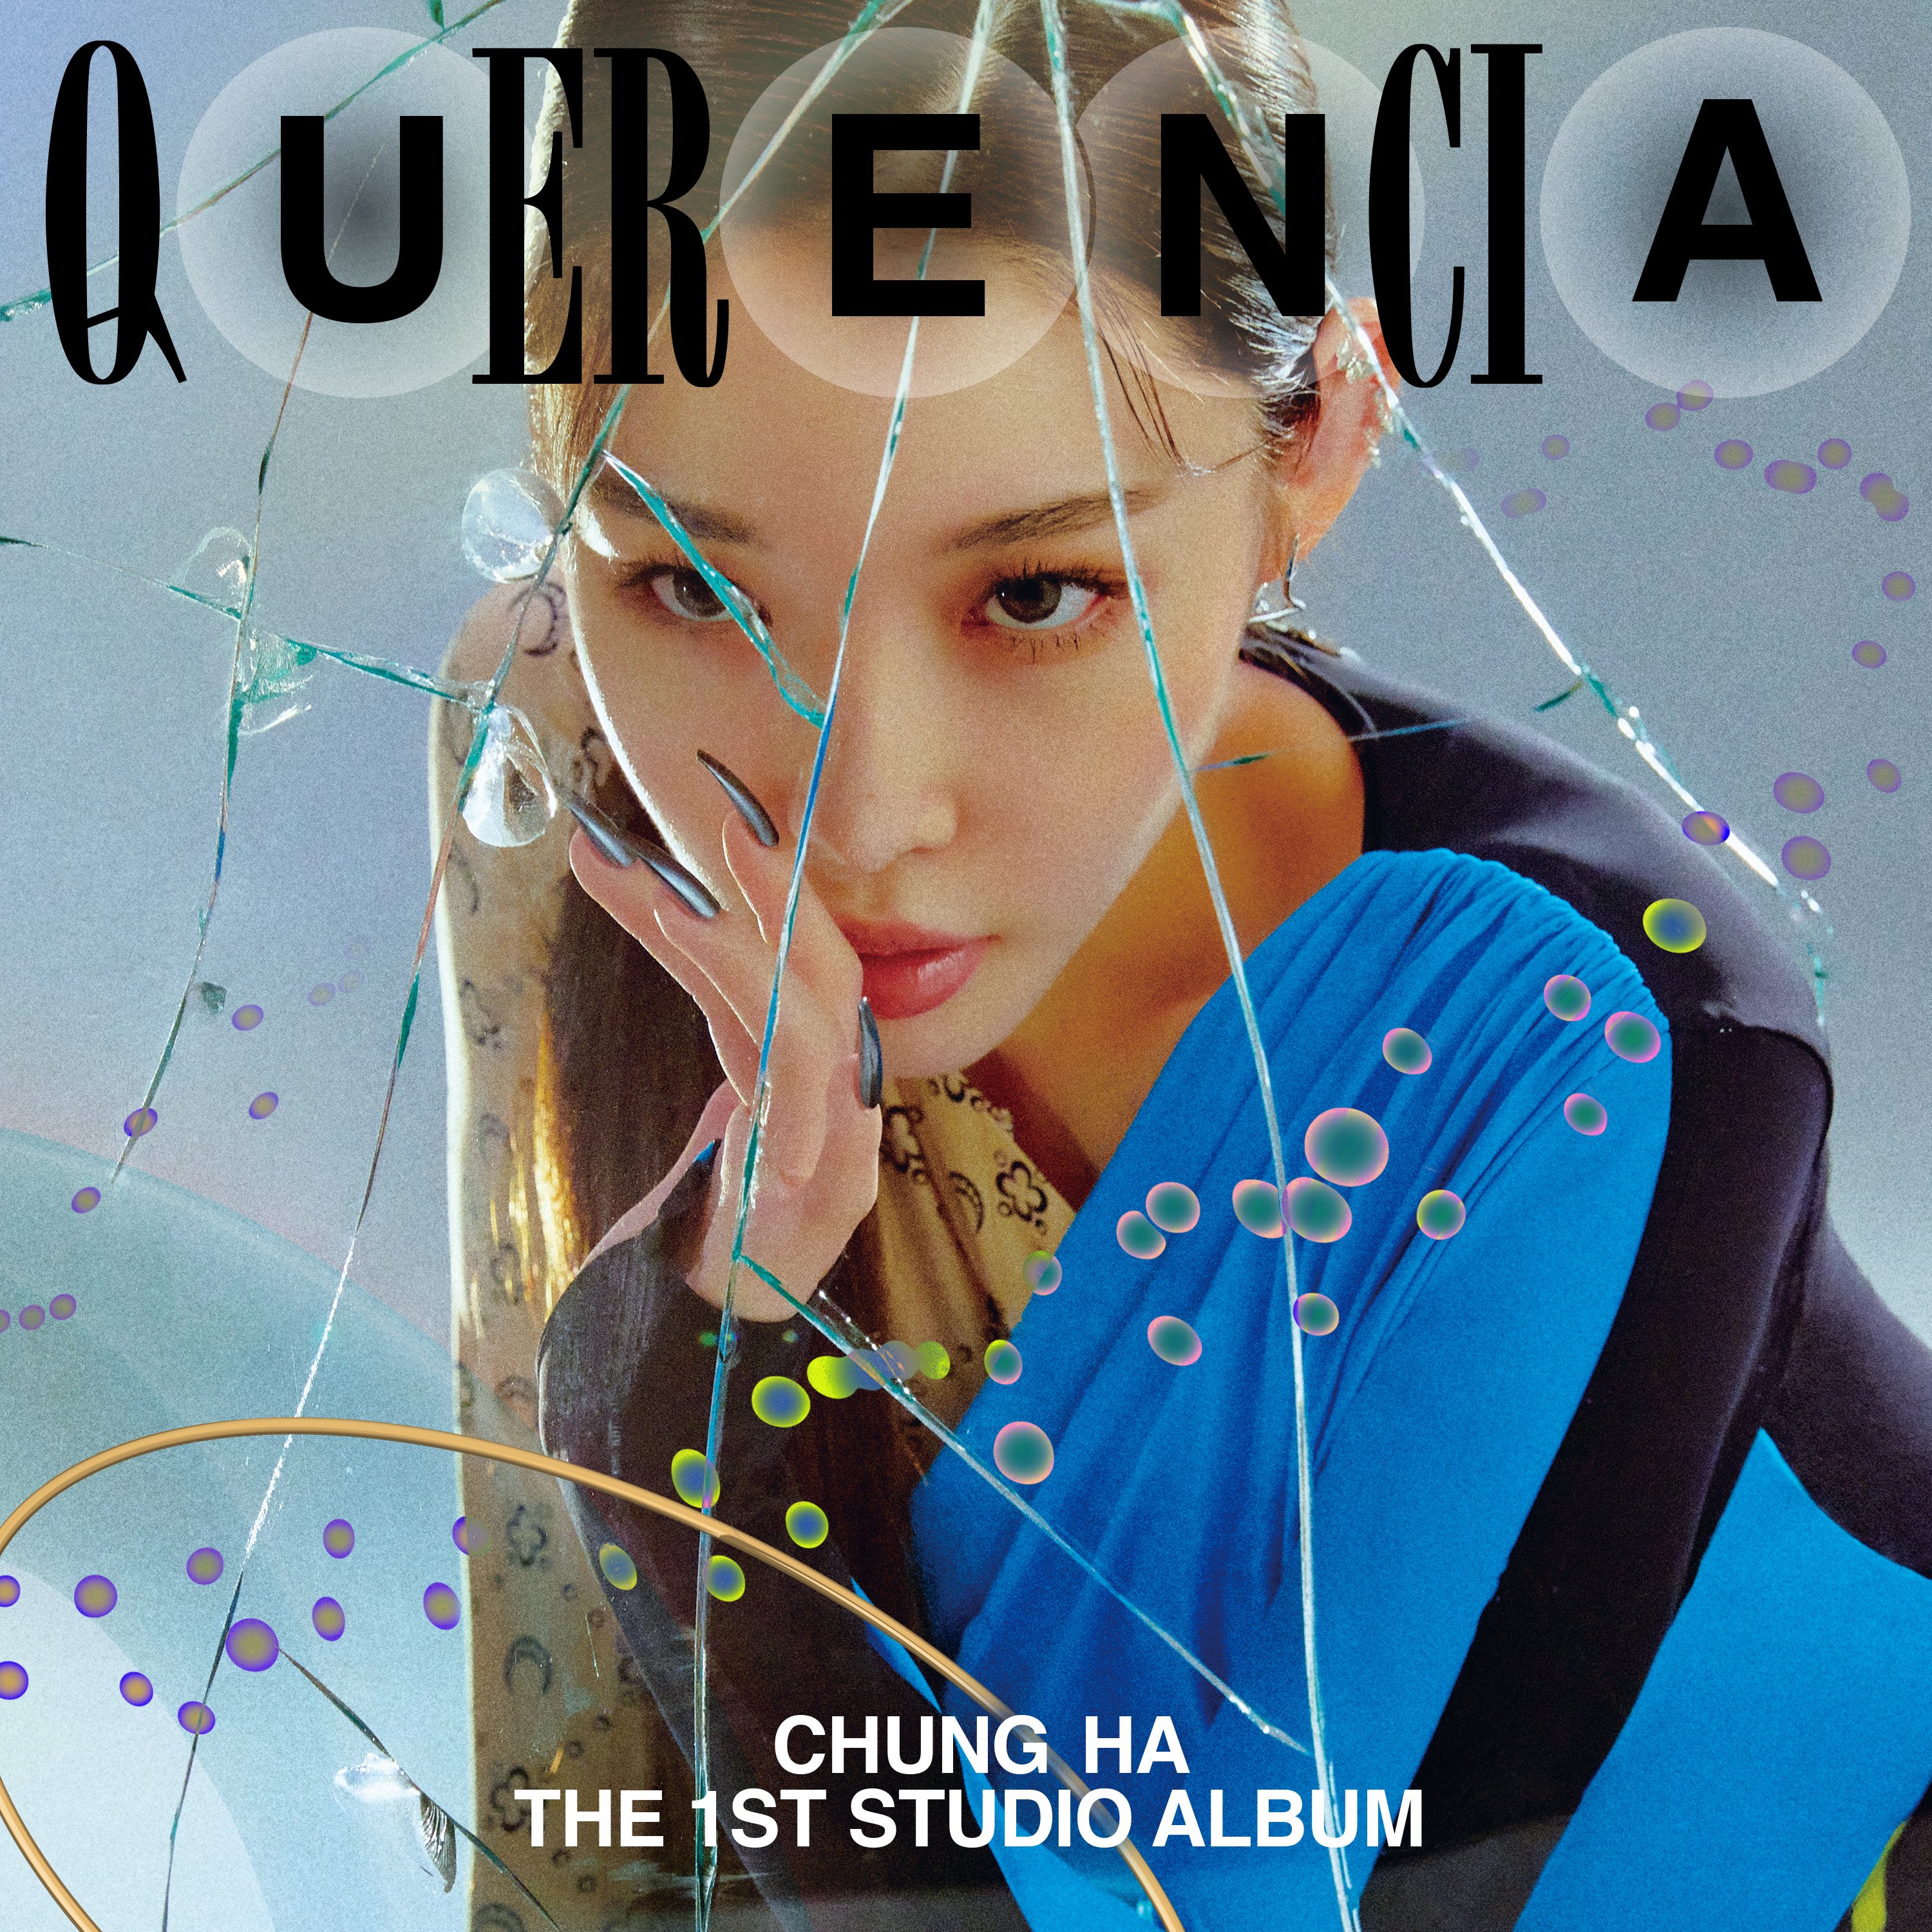 청하 CHUNG HA The 1st Studio Album [ Querencia ] COVER IMAGE